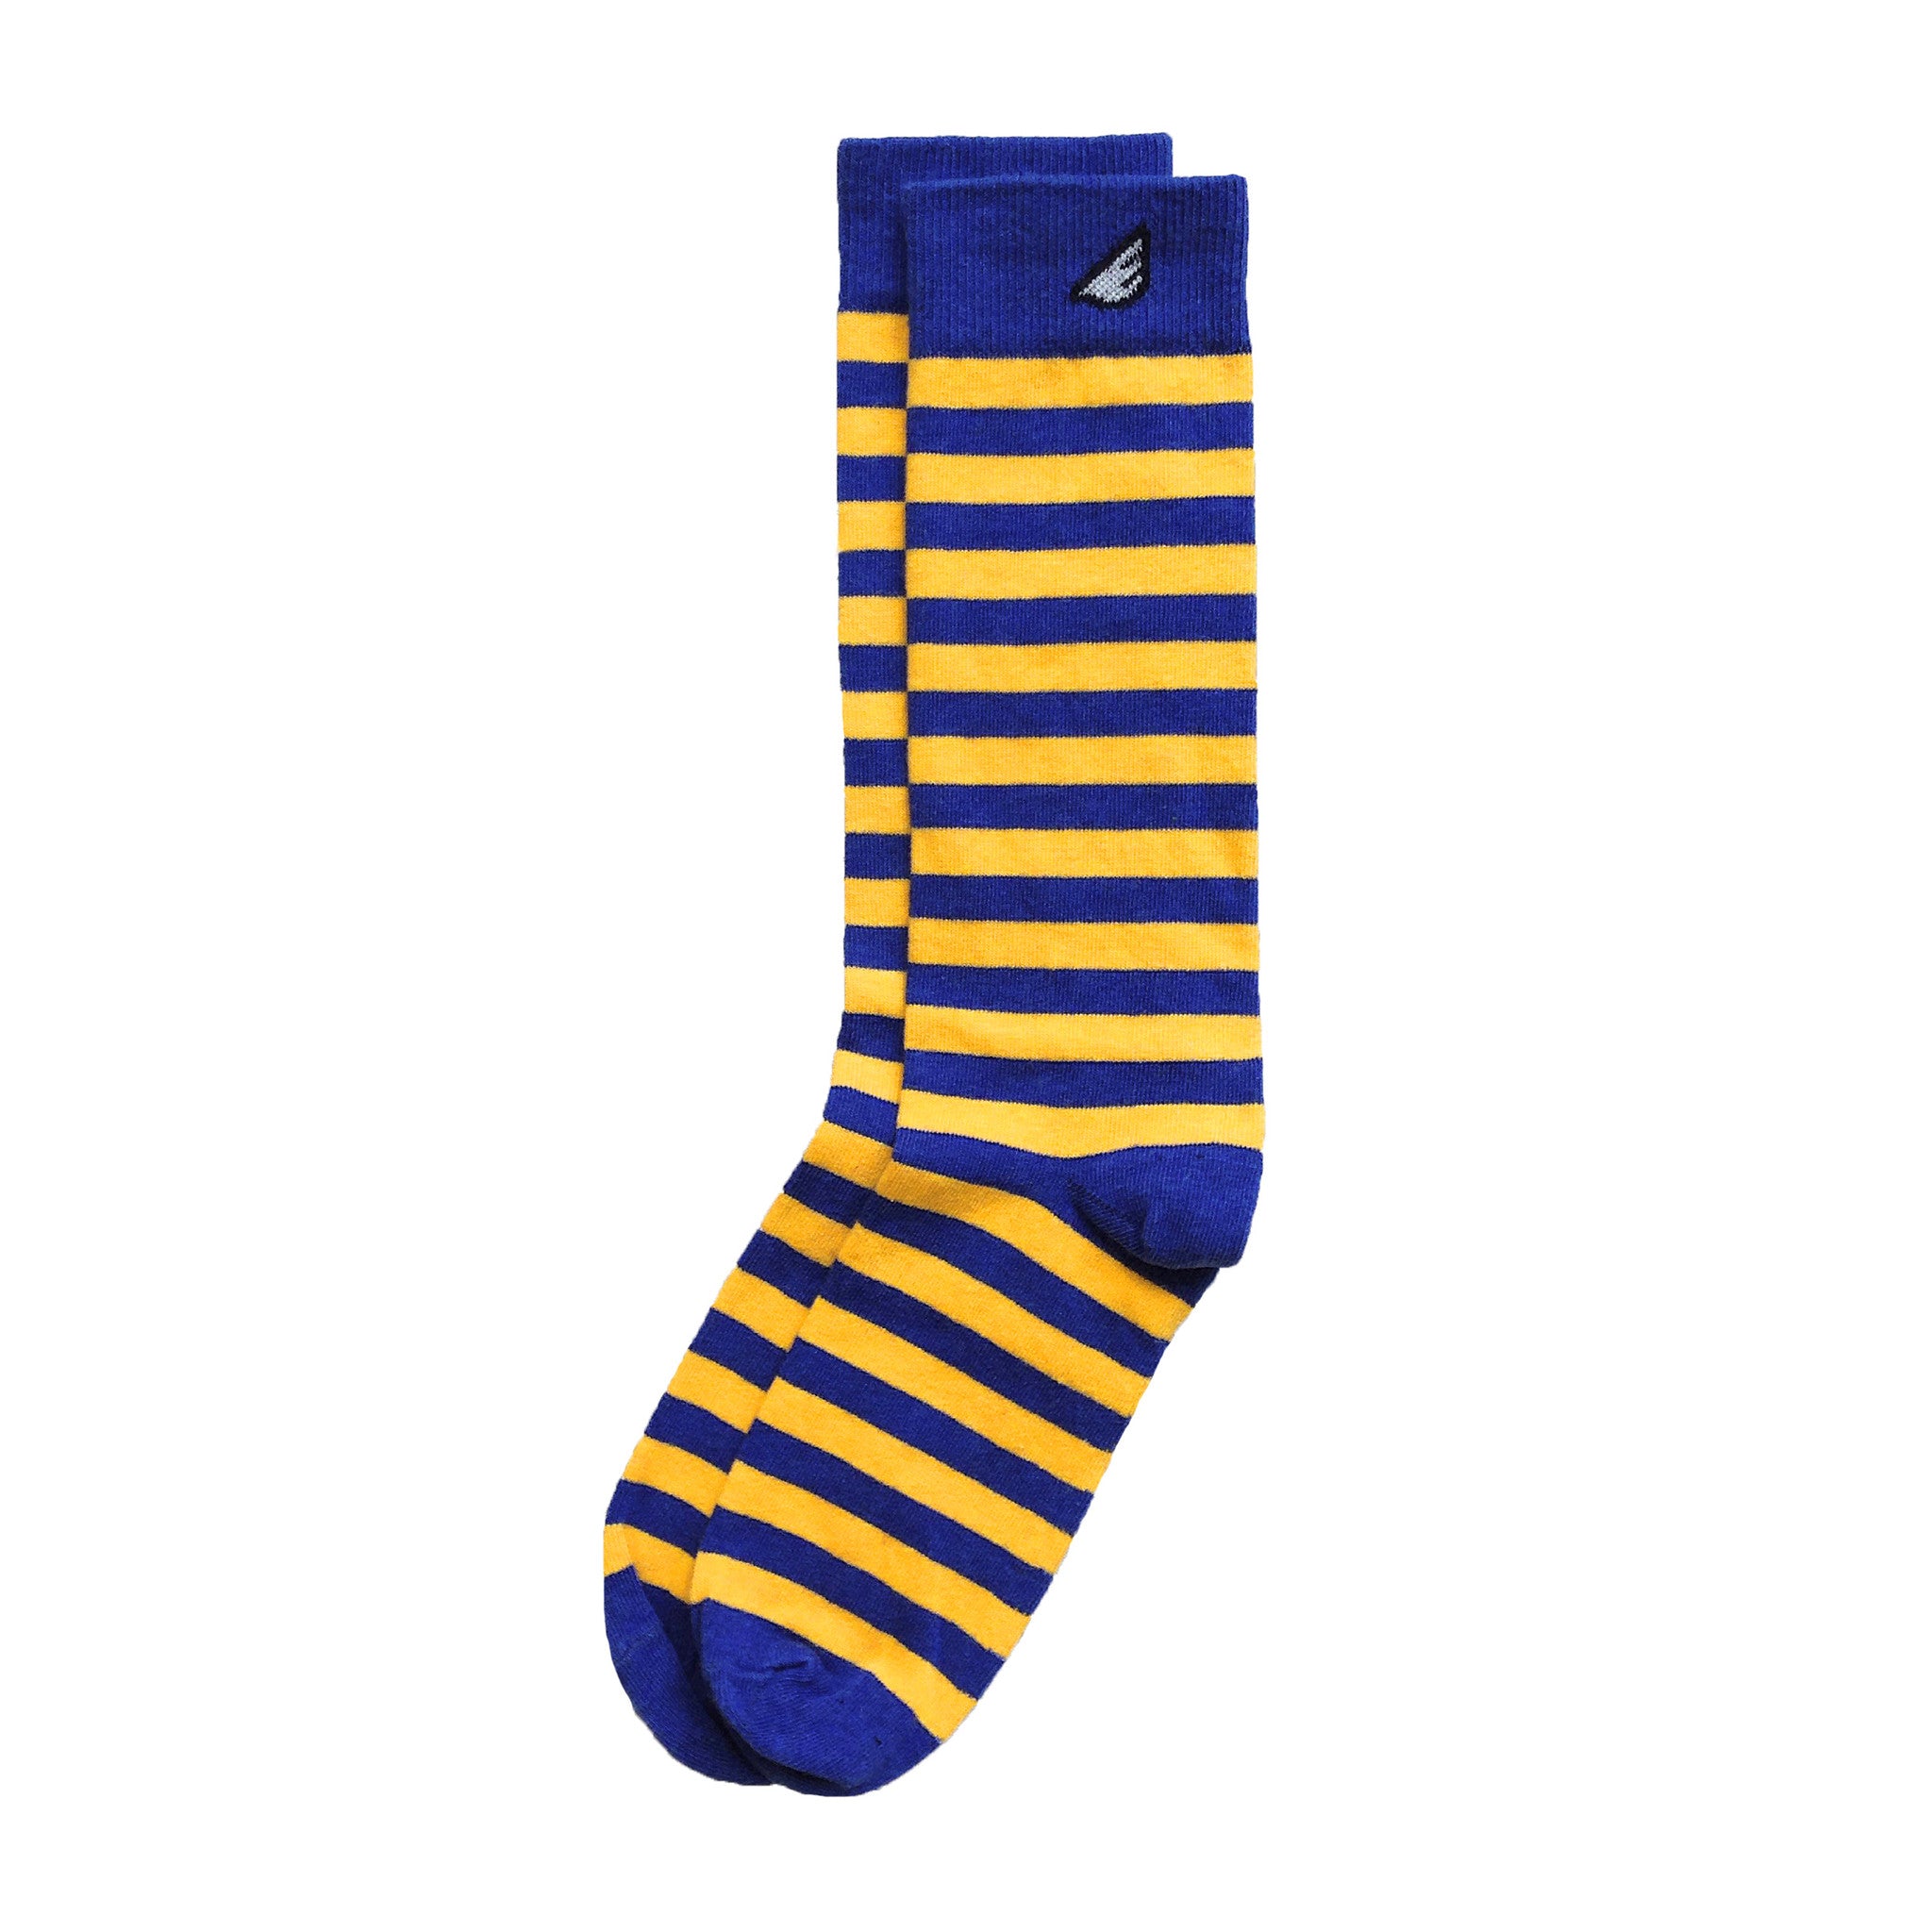 Junior Gold Blue Socks, Men's Apparel